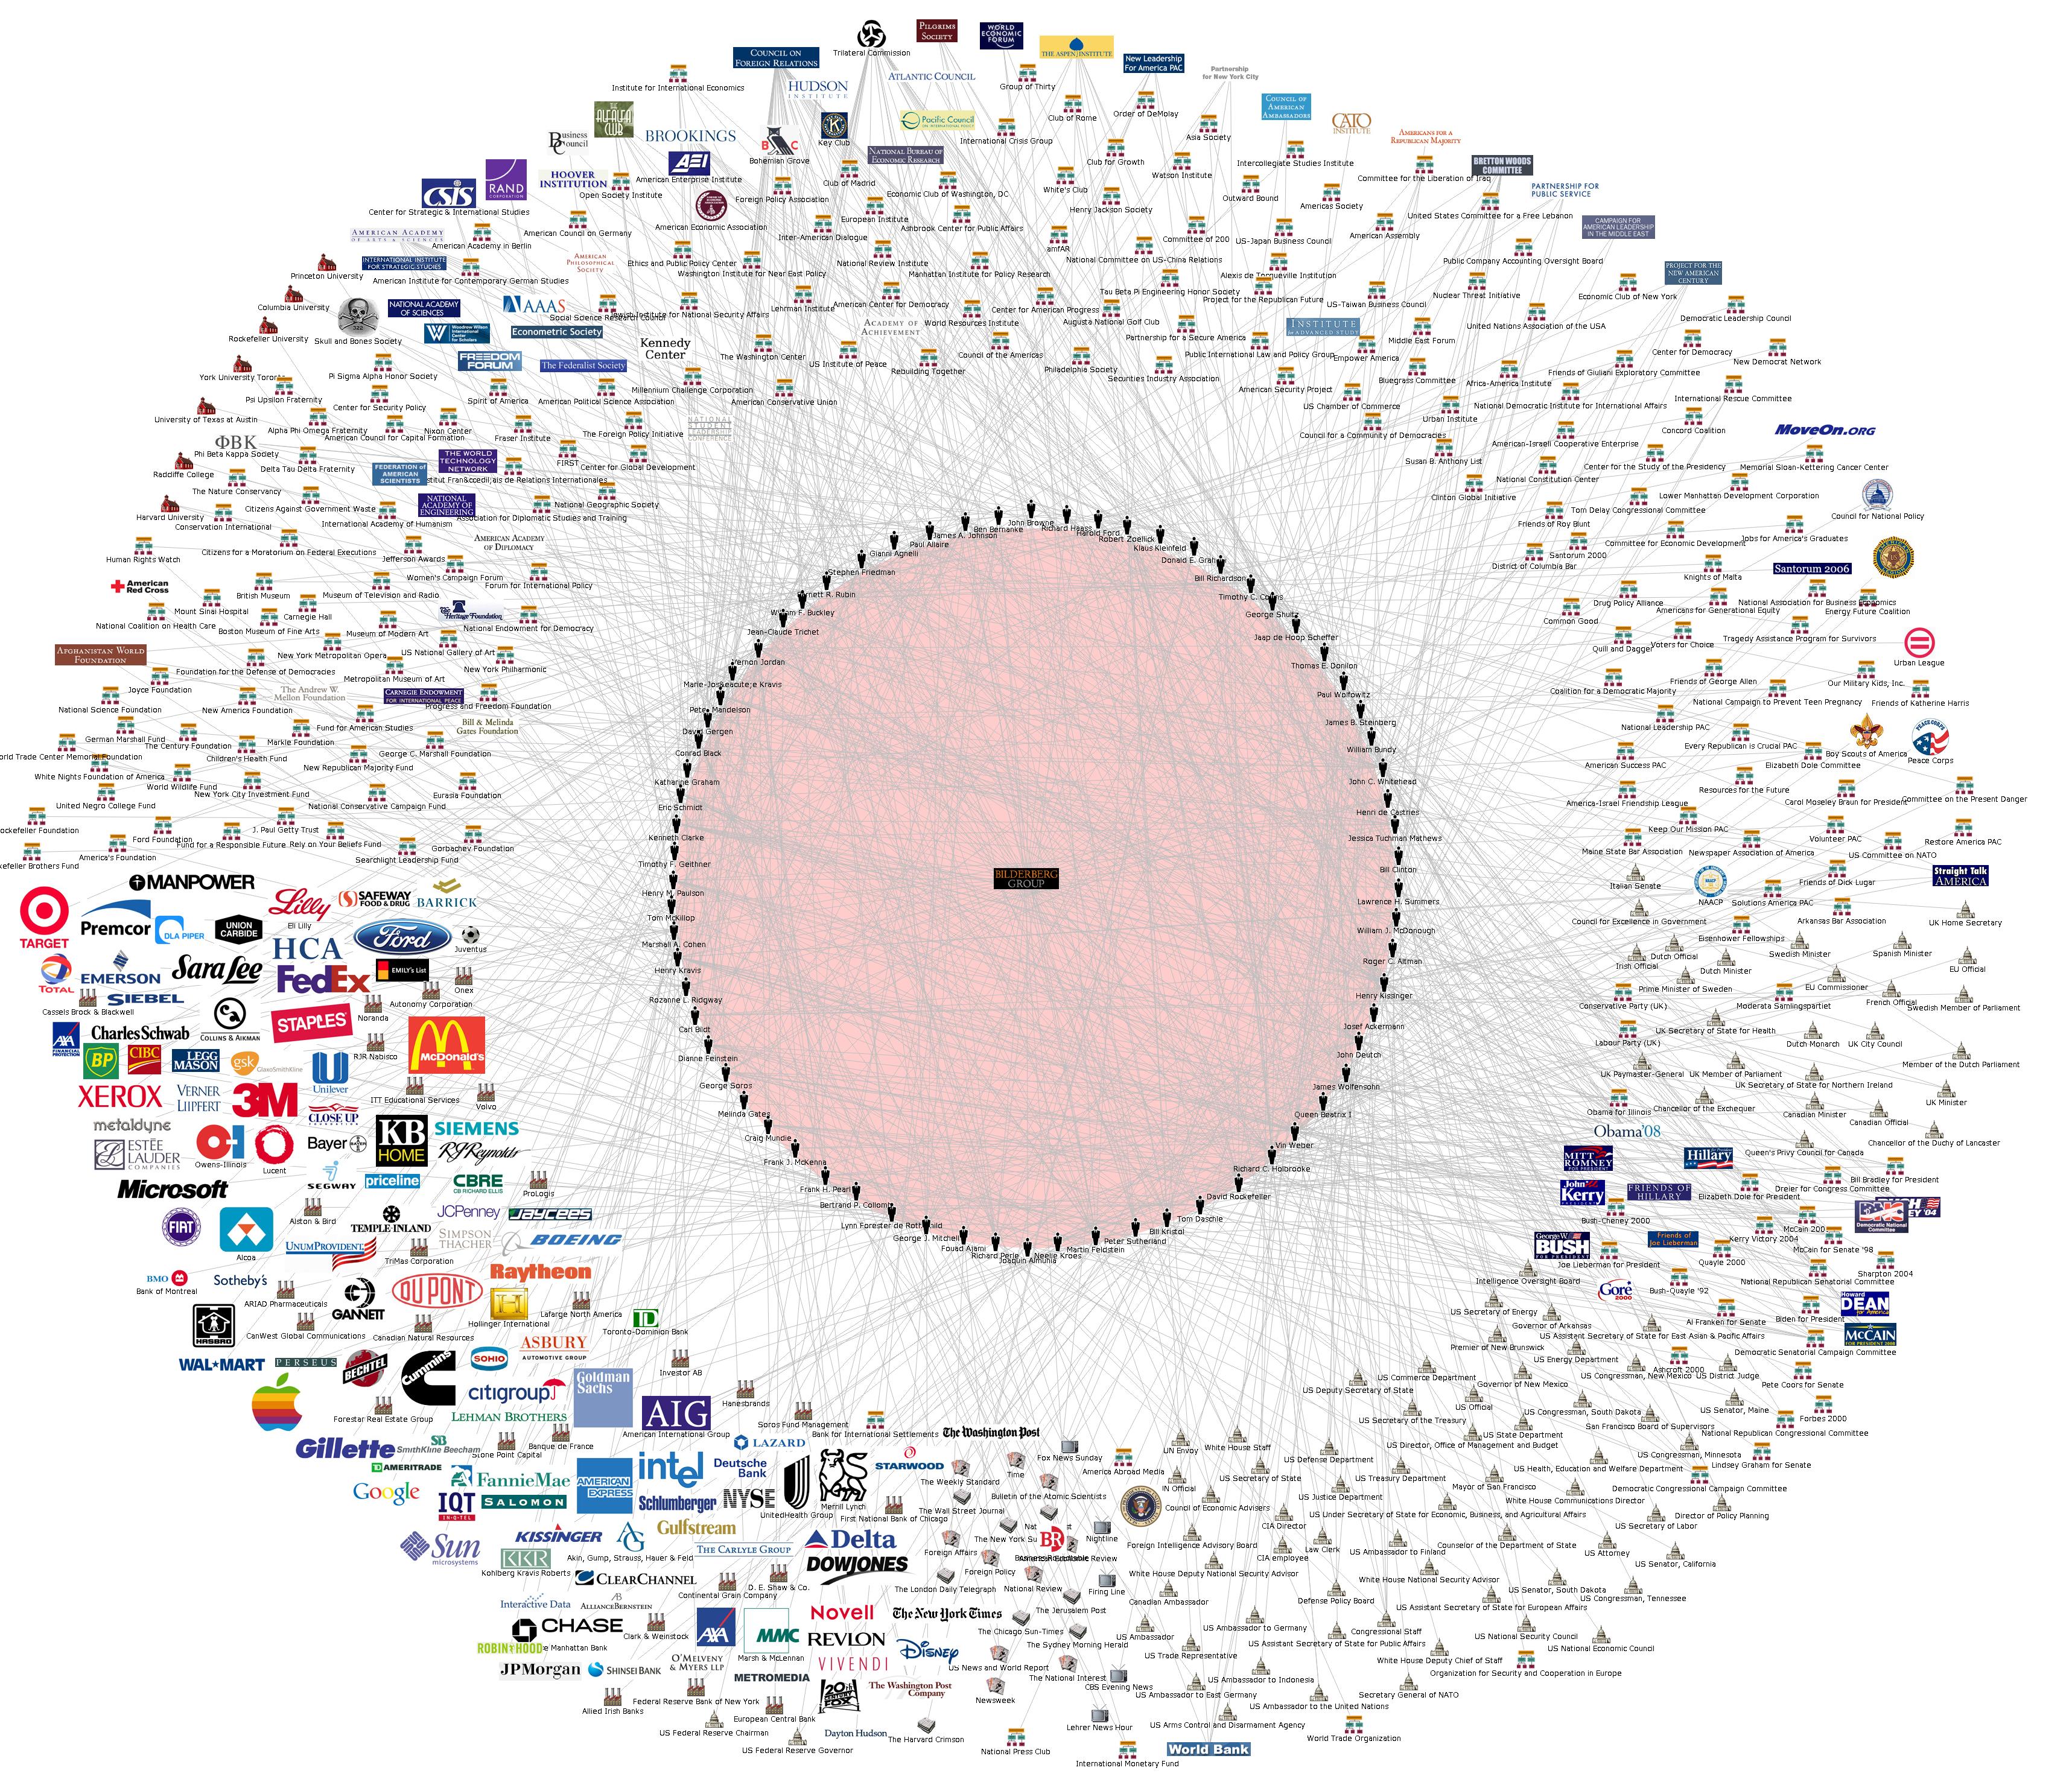 Bilderberg_Group_Network_Large.jpg